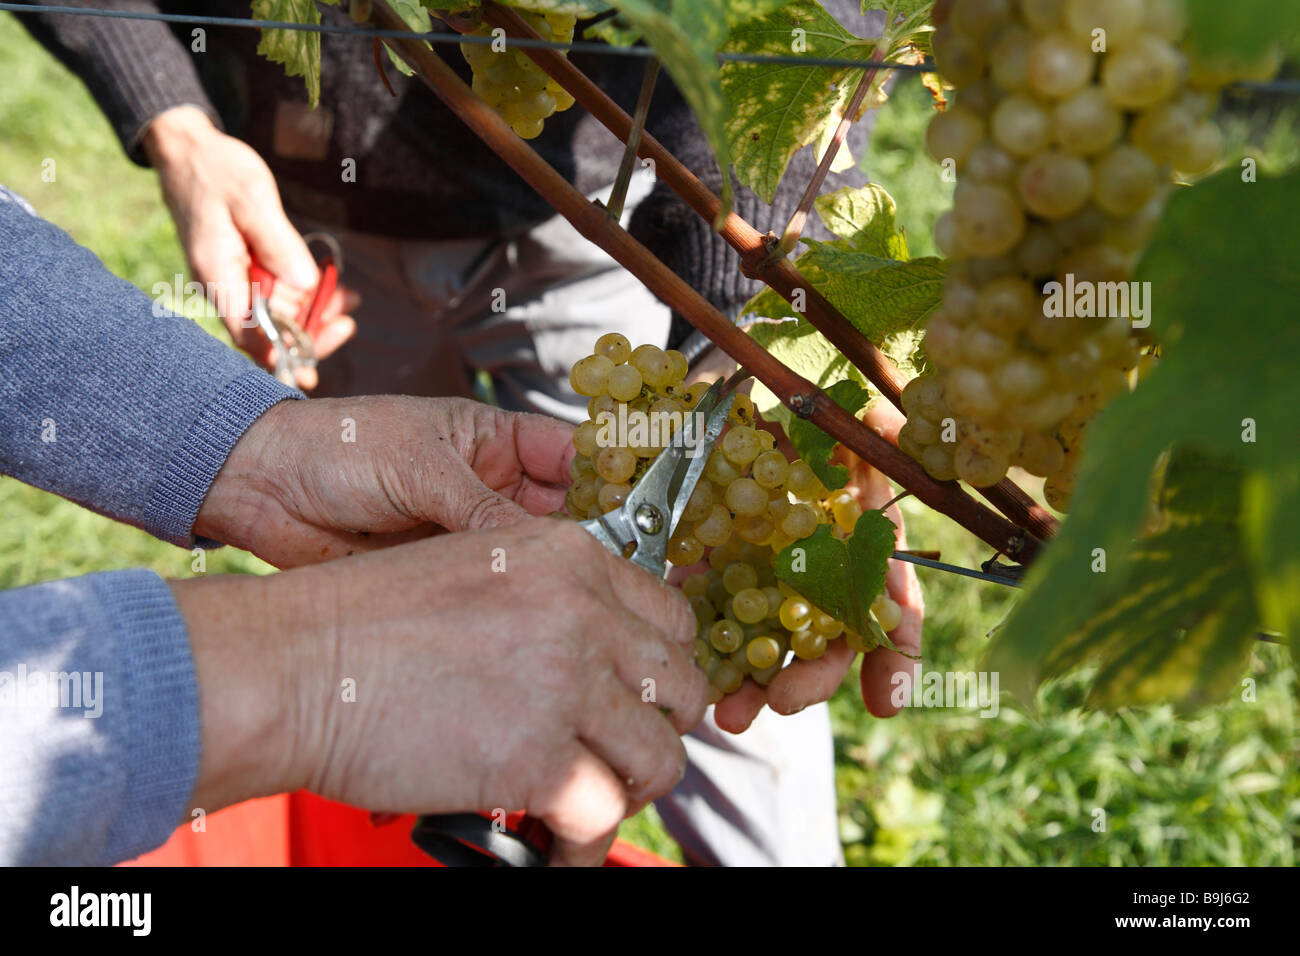 La récolte de raisin dans les mains Langegg, le sud de la Styrie, Autriche, Europe Banque D'Images